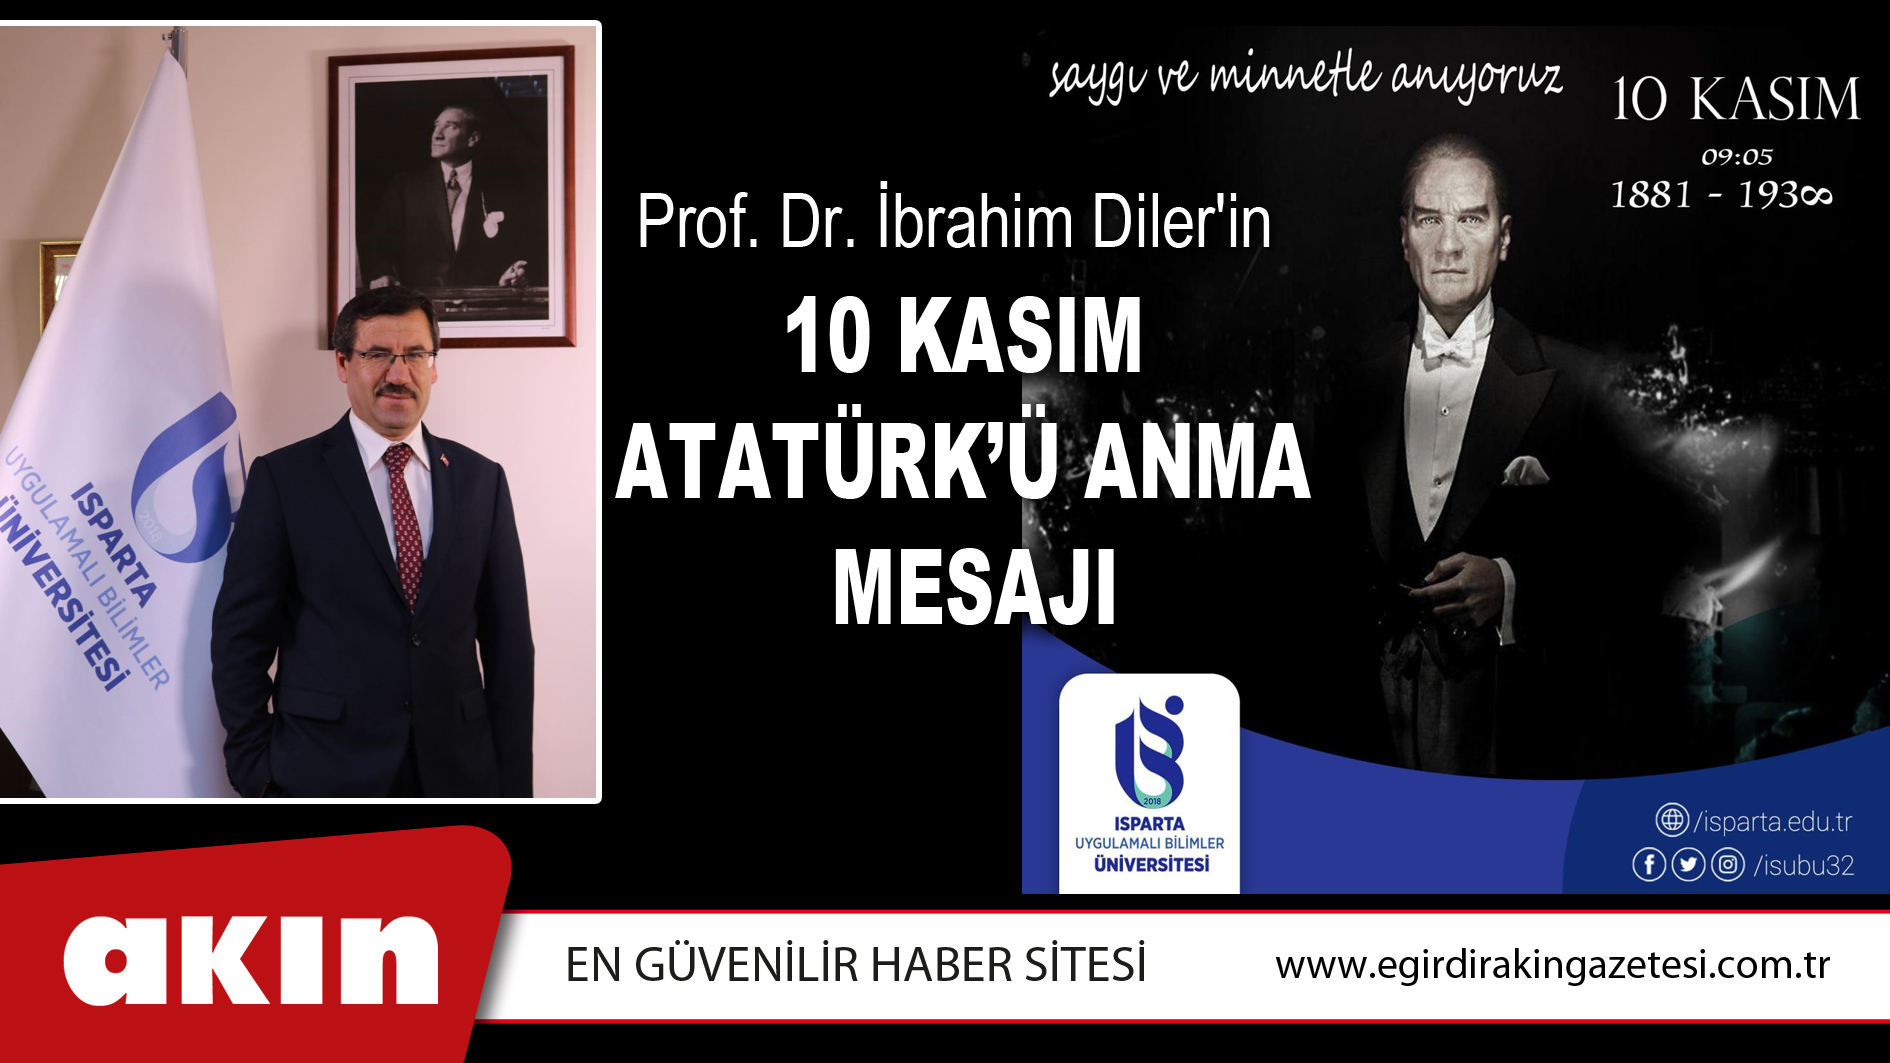 Prof. Dr. İbrahim Diler'in 10 Kasım Mesajı